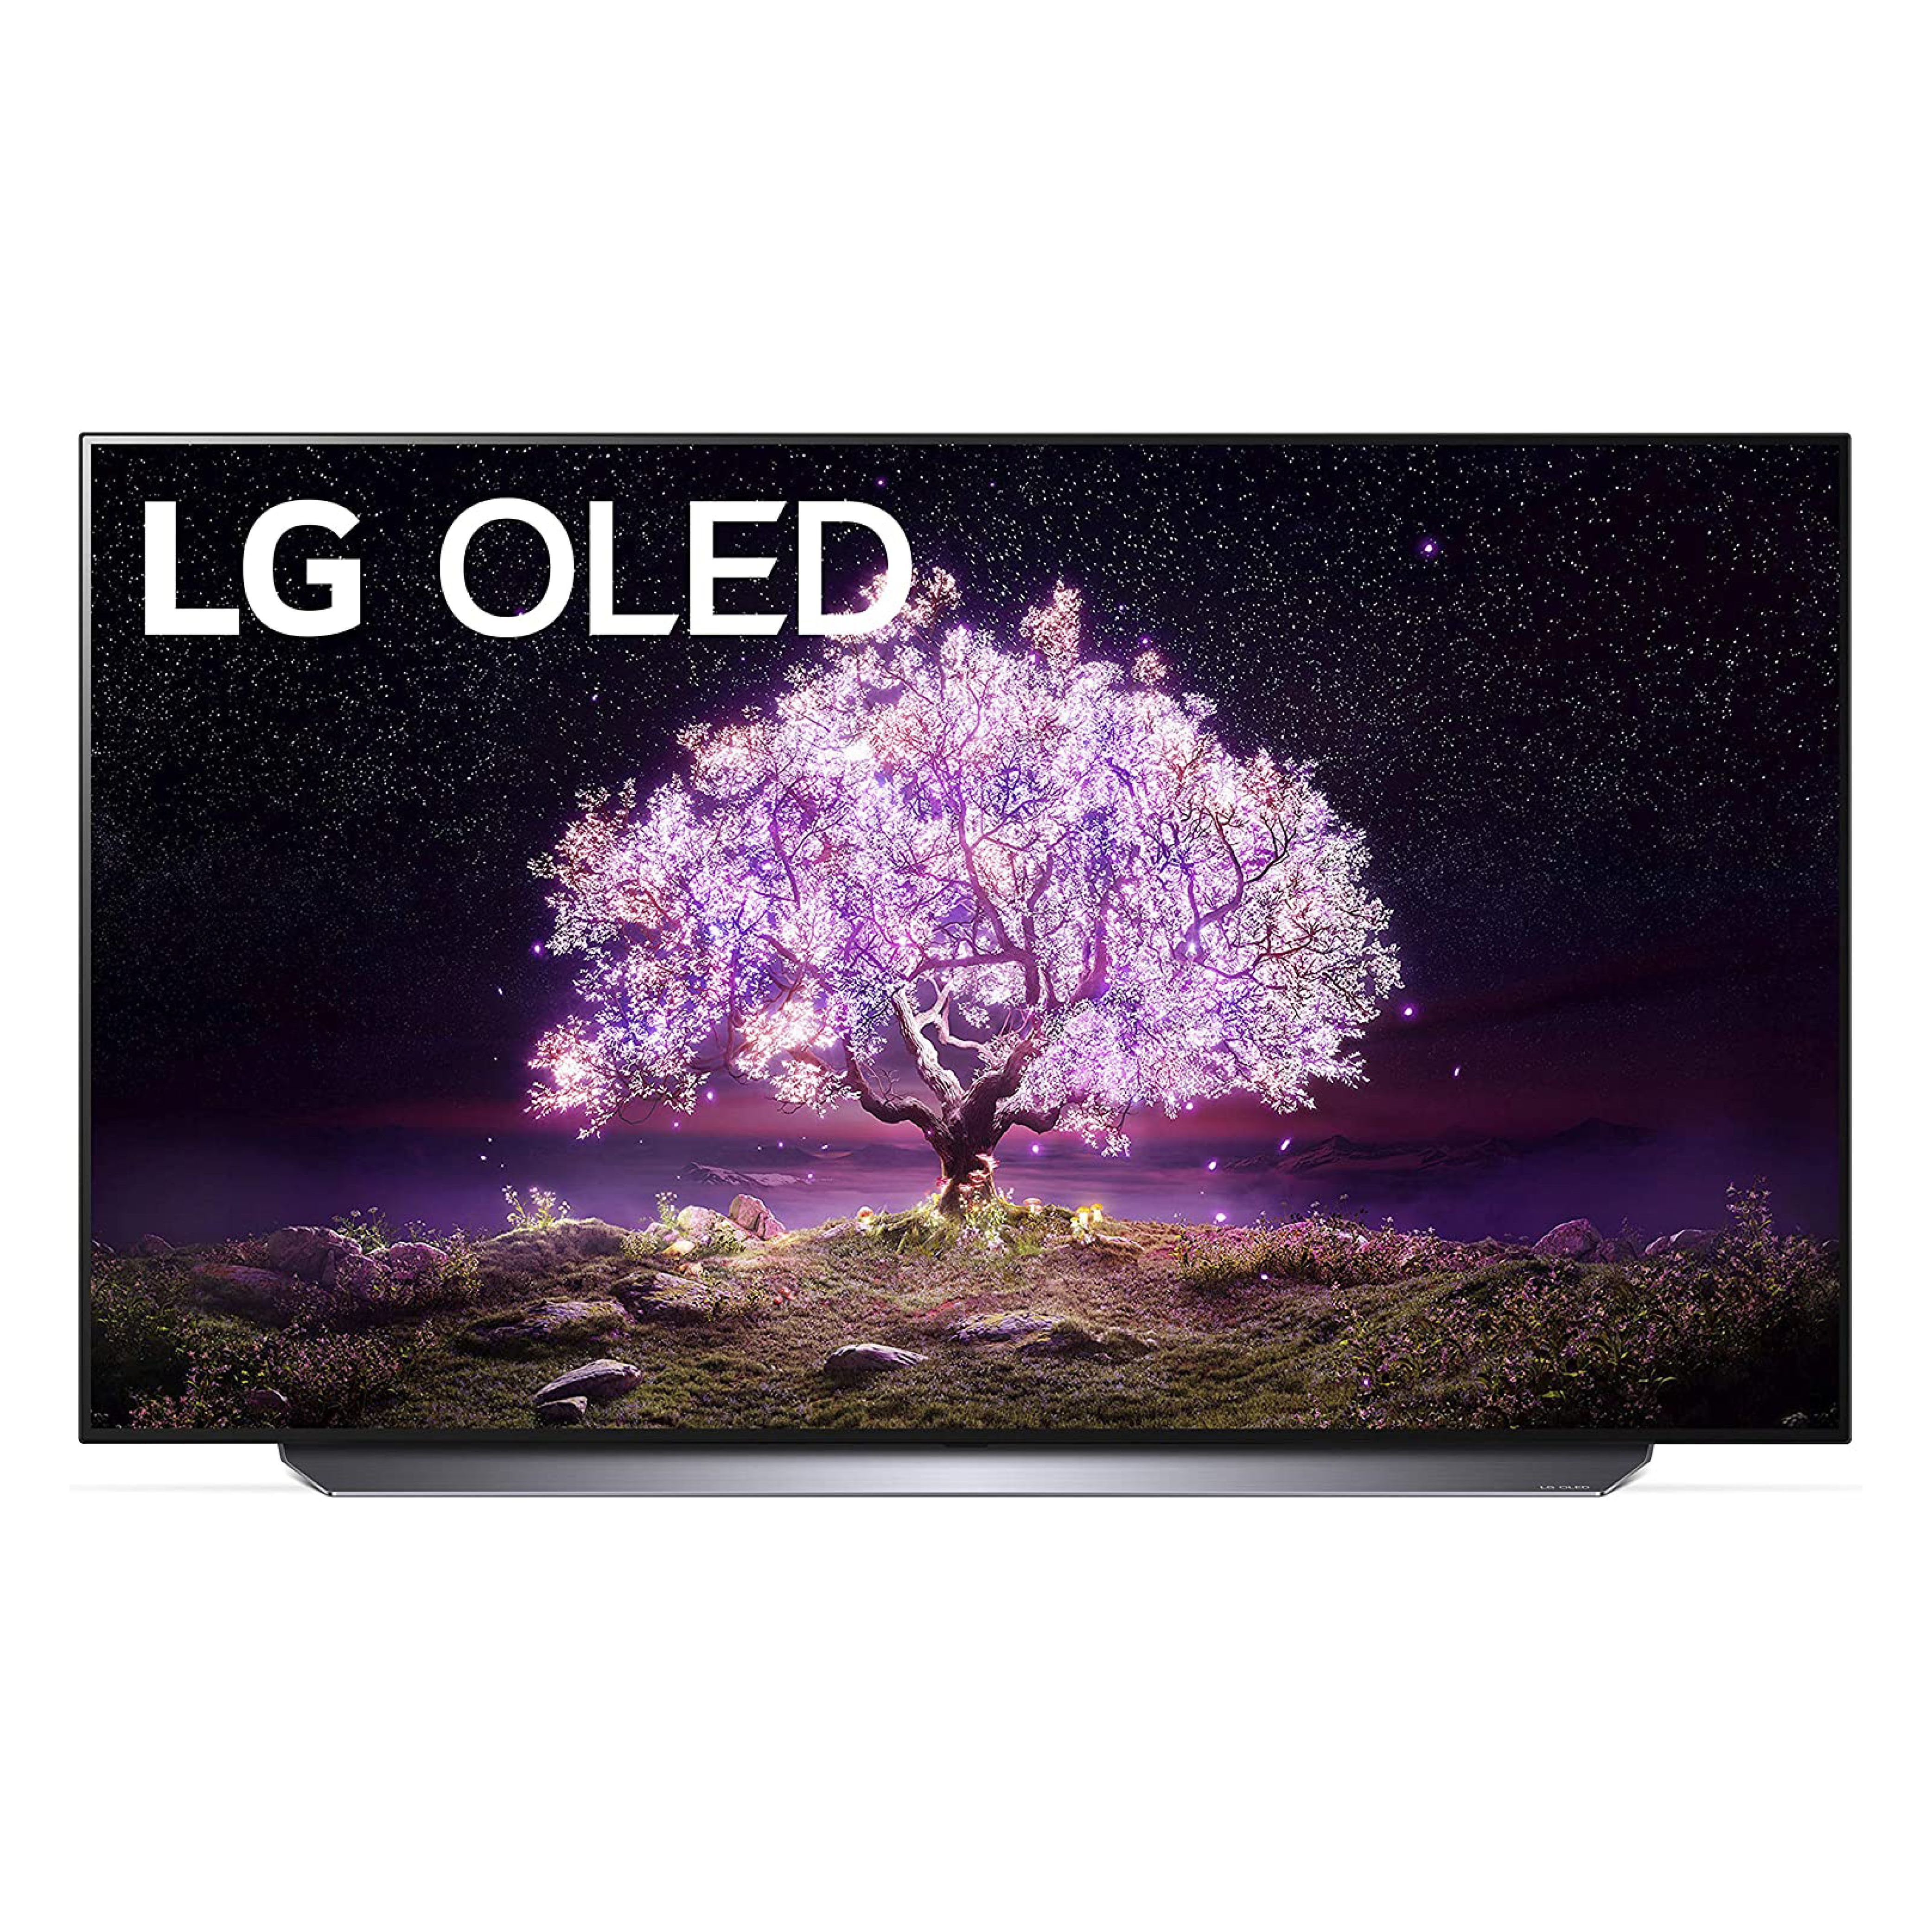 LG C1 Series OLED